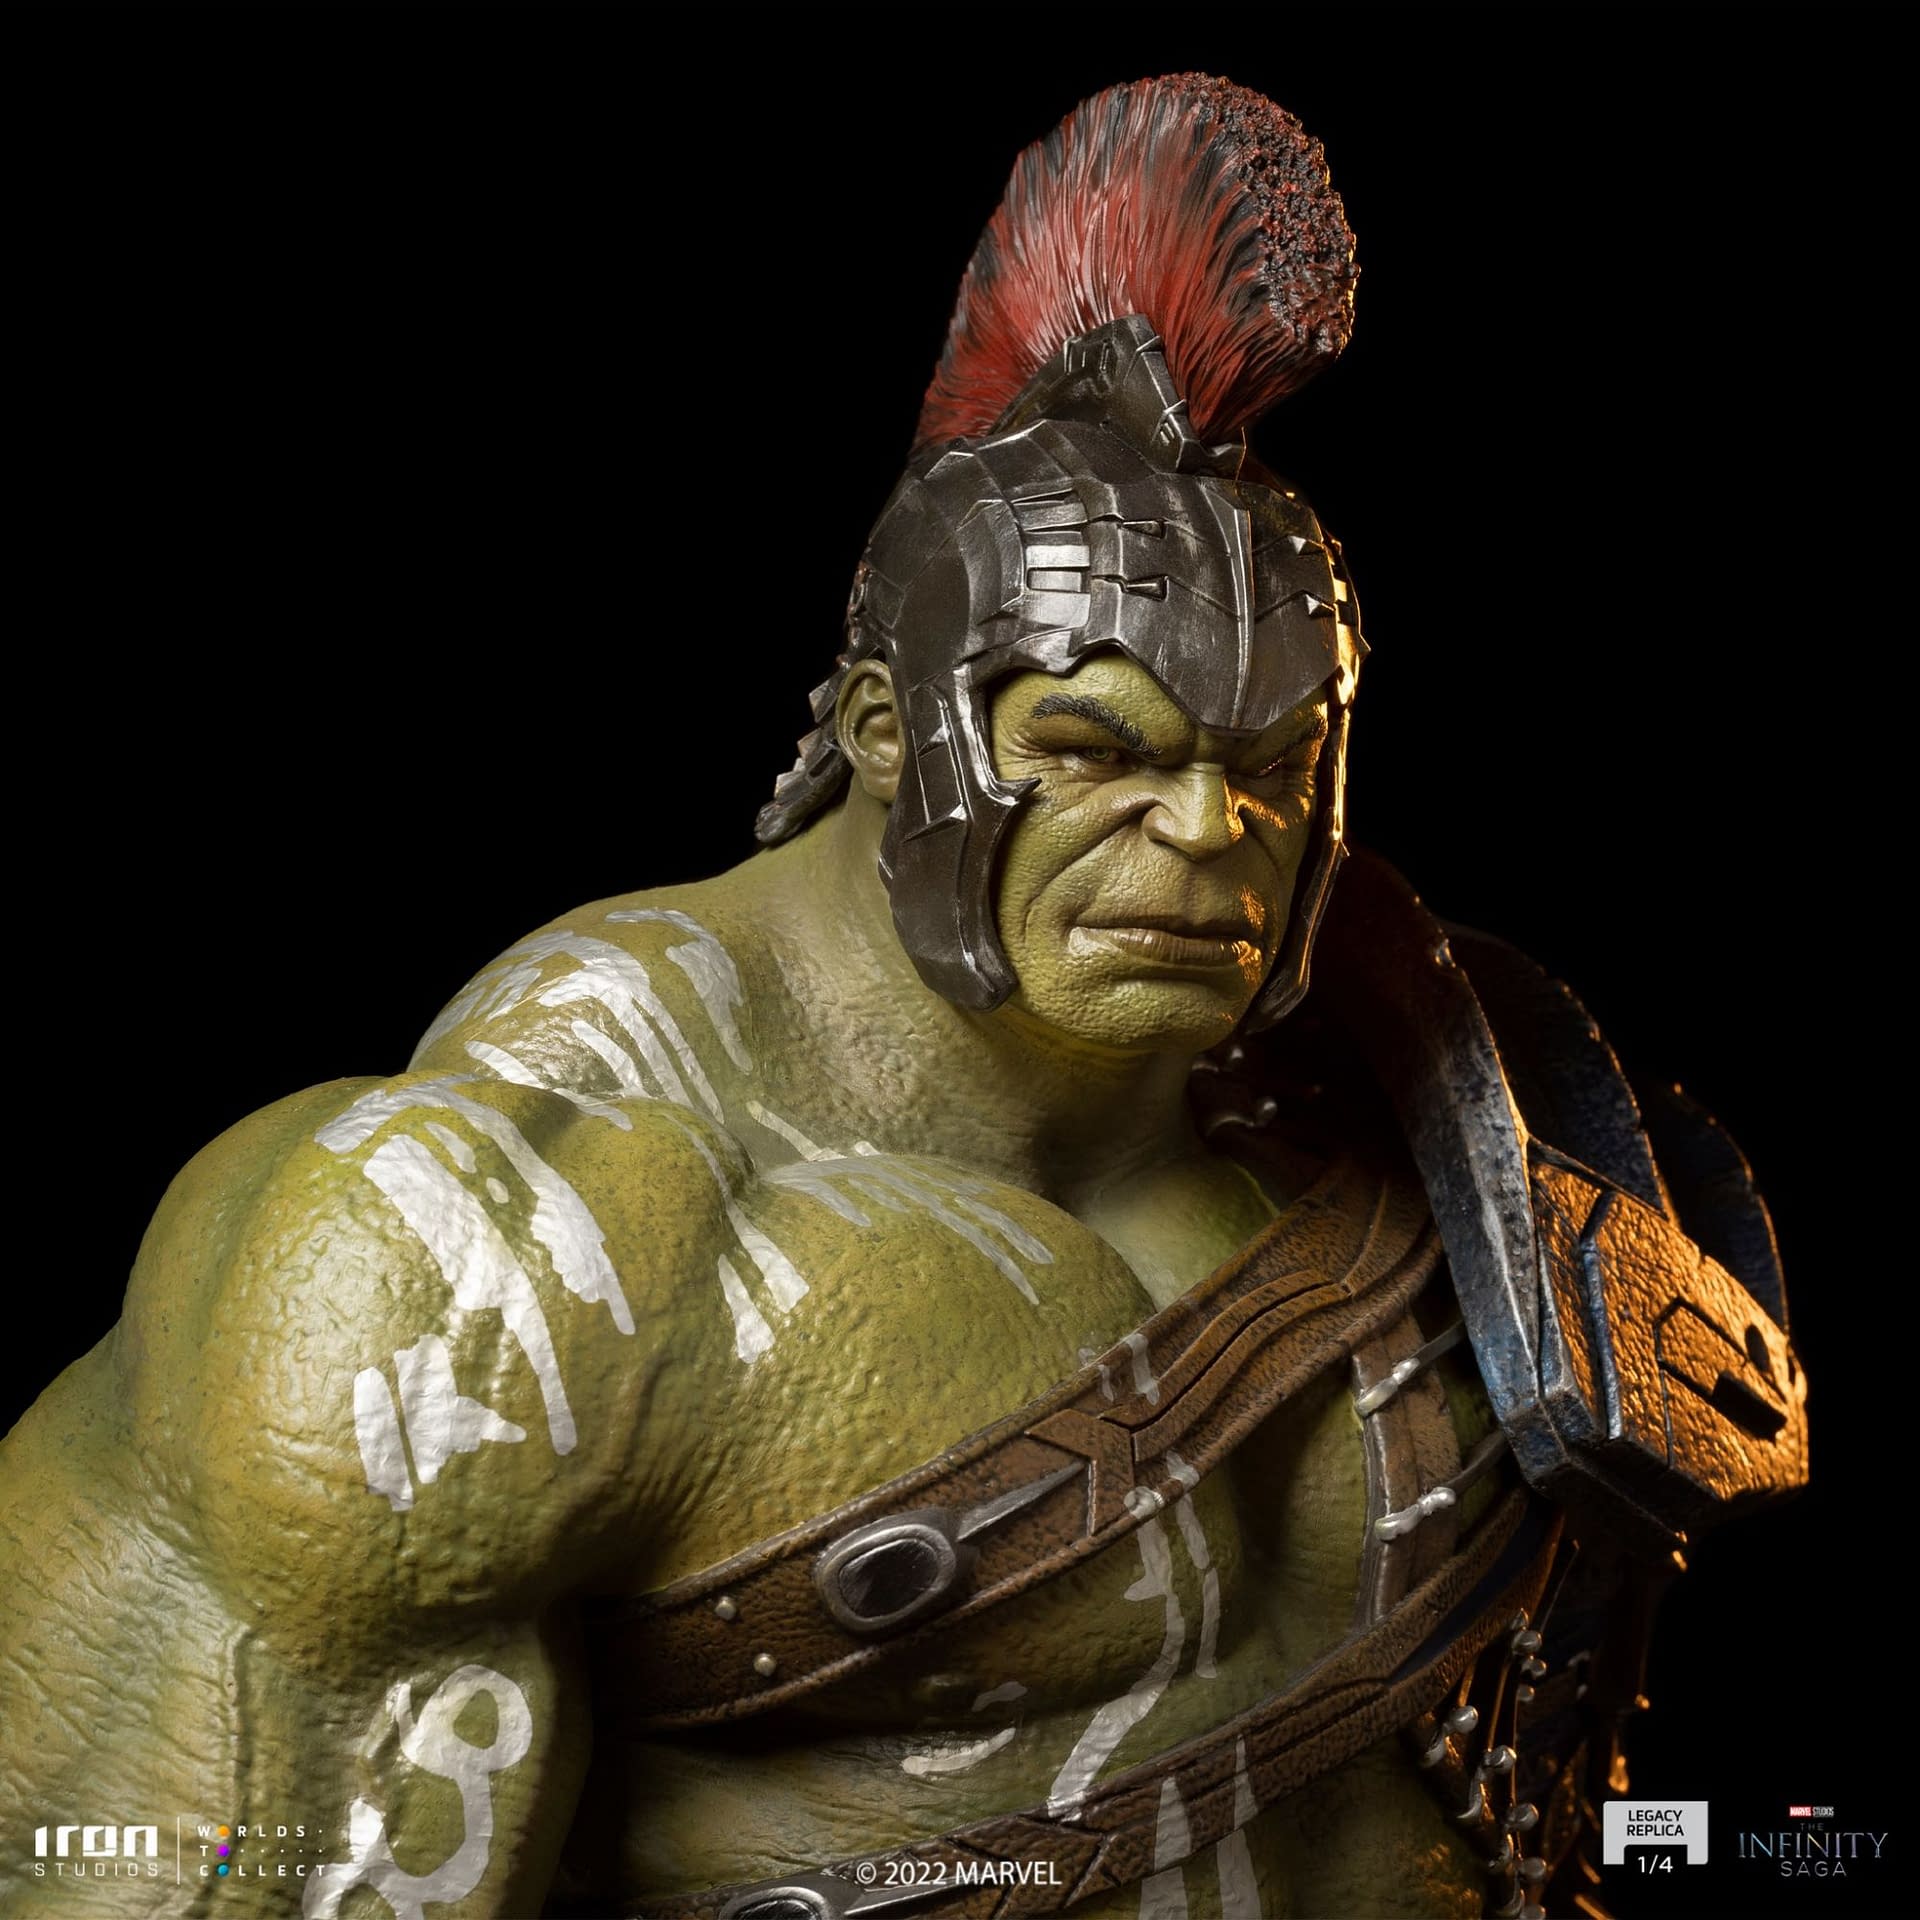 Thor: Ragnarok Gladiator Hulk Enters The Arena With Iron Studios